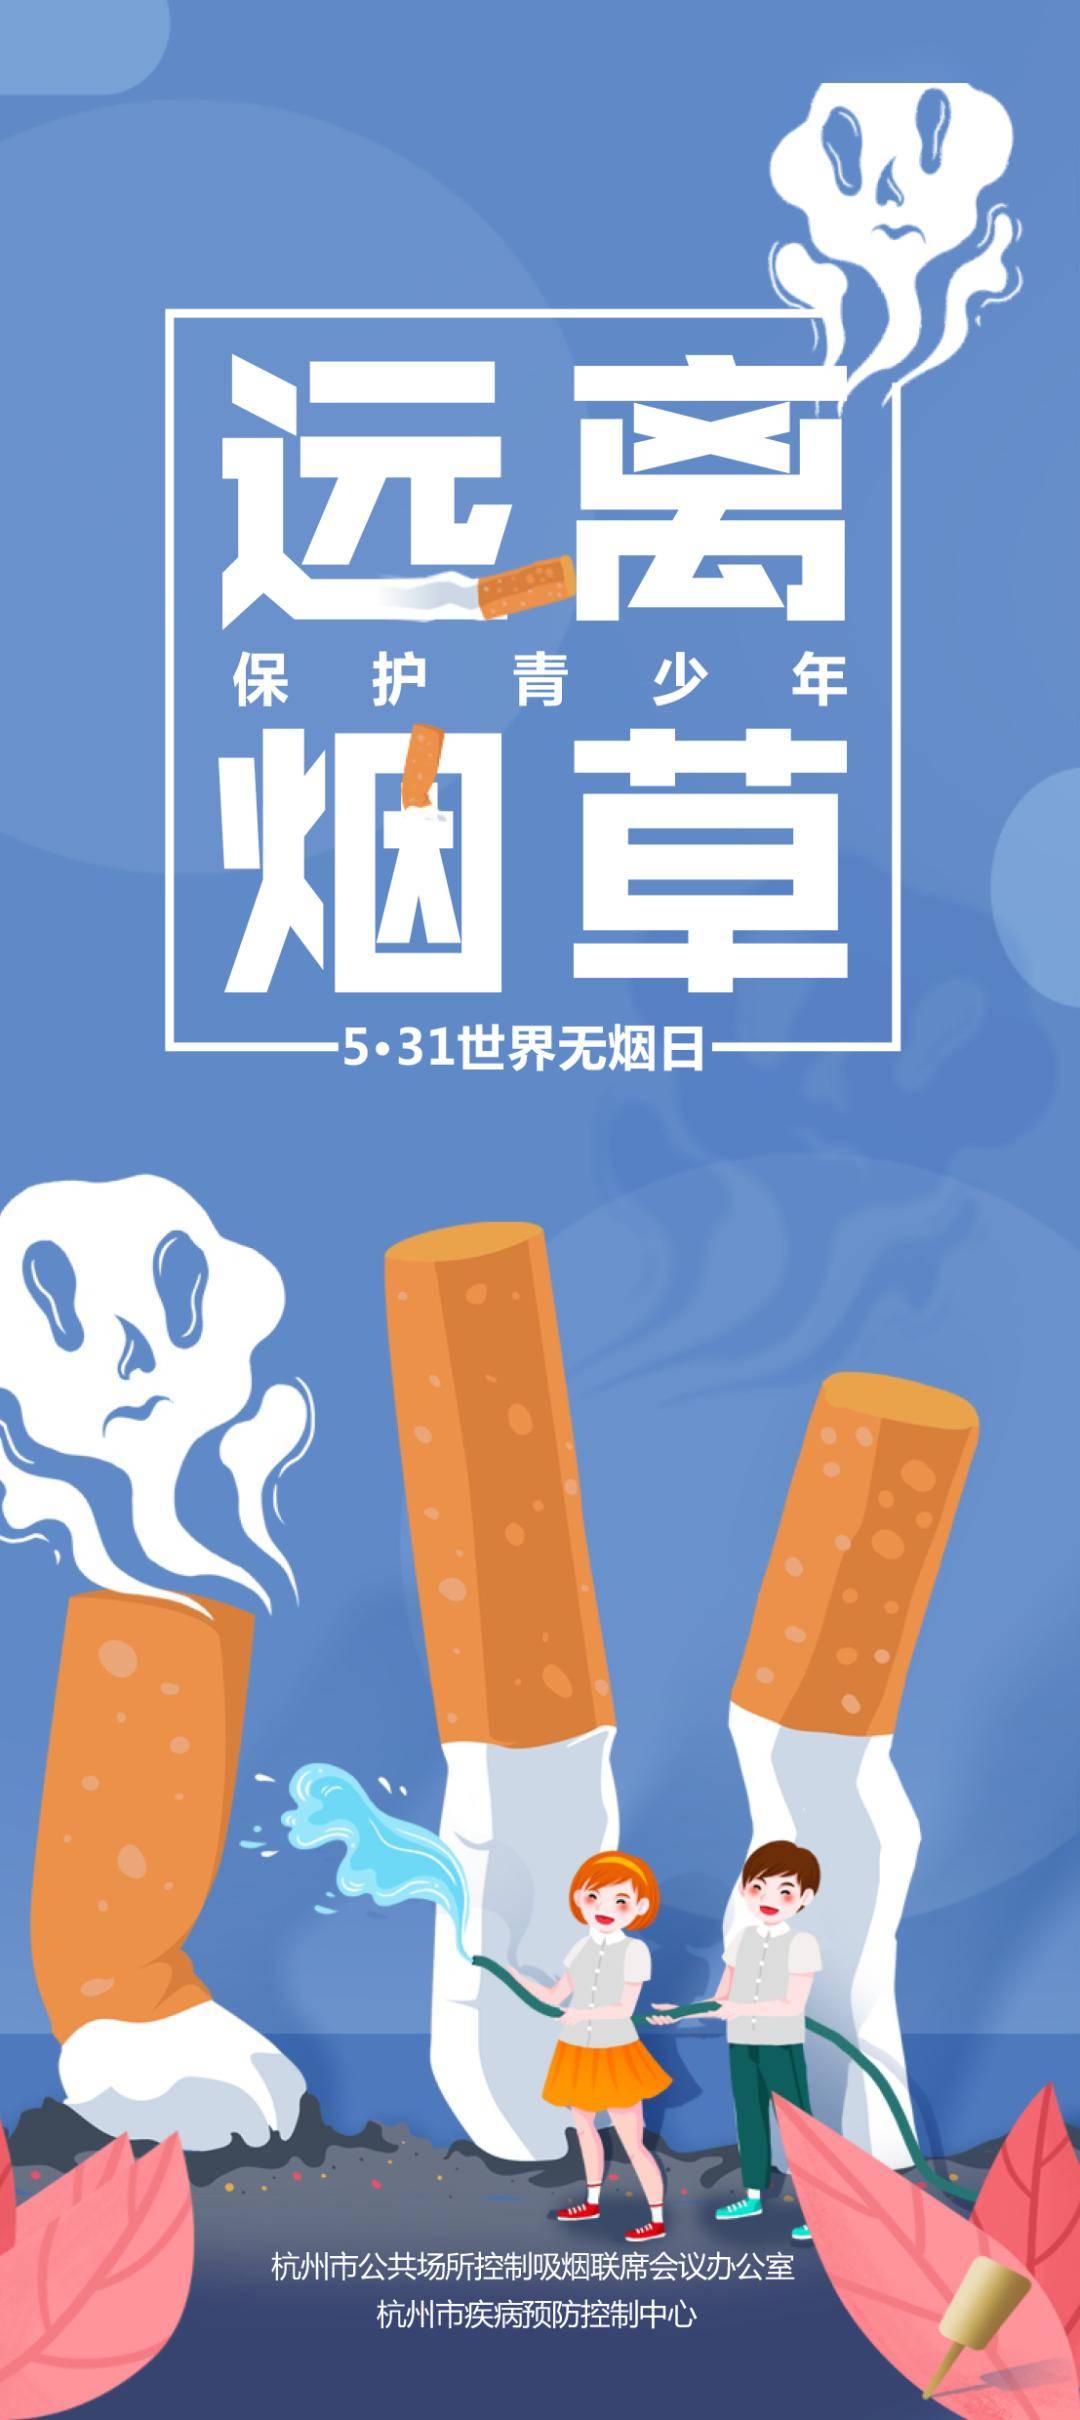 世界无烟日保护青少年